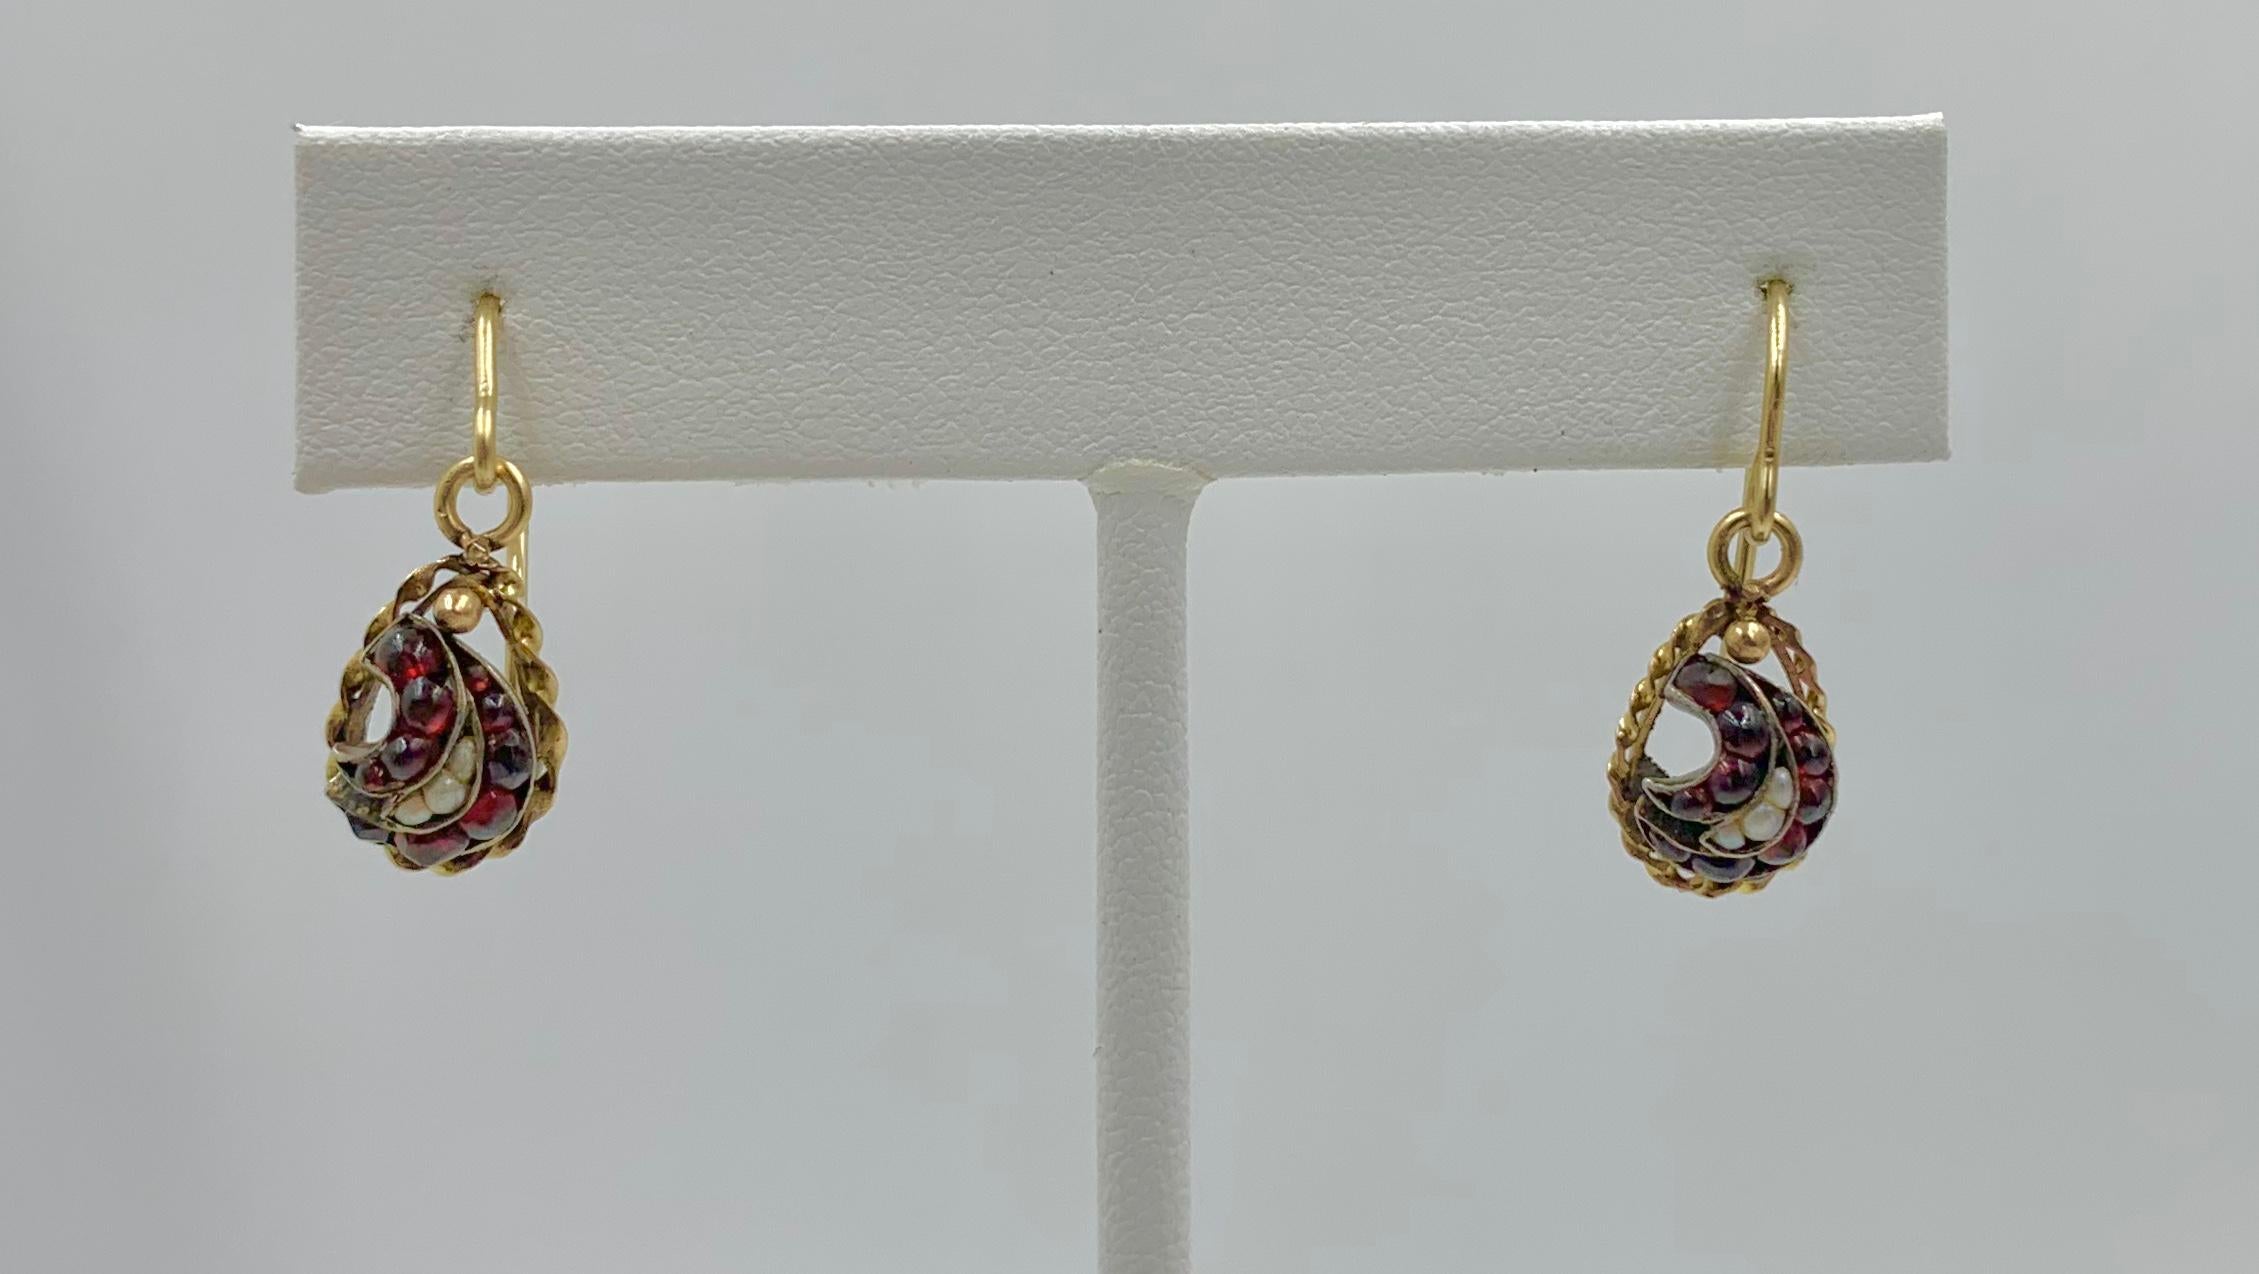 Dies ist ein seltenes Paar viktorianischer böhmischer Granat- und Perlentropfen-Ohrringe aus 10 Karat Gold.  Die exquisiten Ohrringe haben ein Wirbelmotiv, das mit wunderschönen böhmischen Granat-Cabochons und Perlenakzenten besetzt ist.  Die